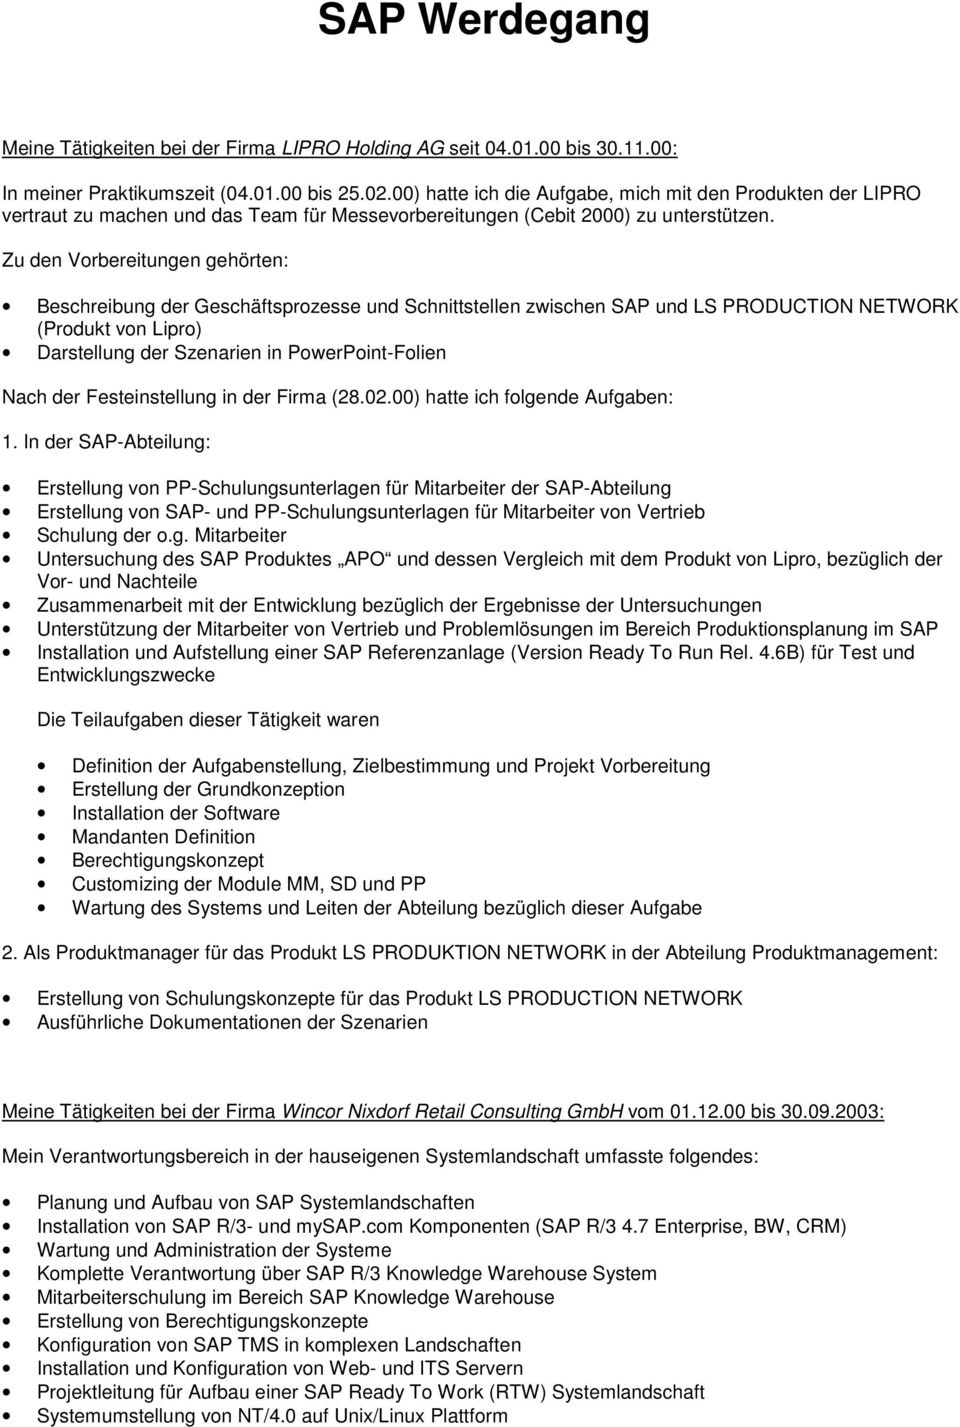 Zu den Vorbereitungen gehörten: Beschreibung der Geschäftsprozesse und Schnittstellen zwischen SAP und LS PRODUCTION NETWORK (Produkt von Lipro) Darstellung der Szenarien in PowerPoint-Folien Nach